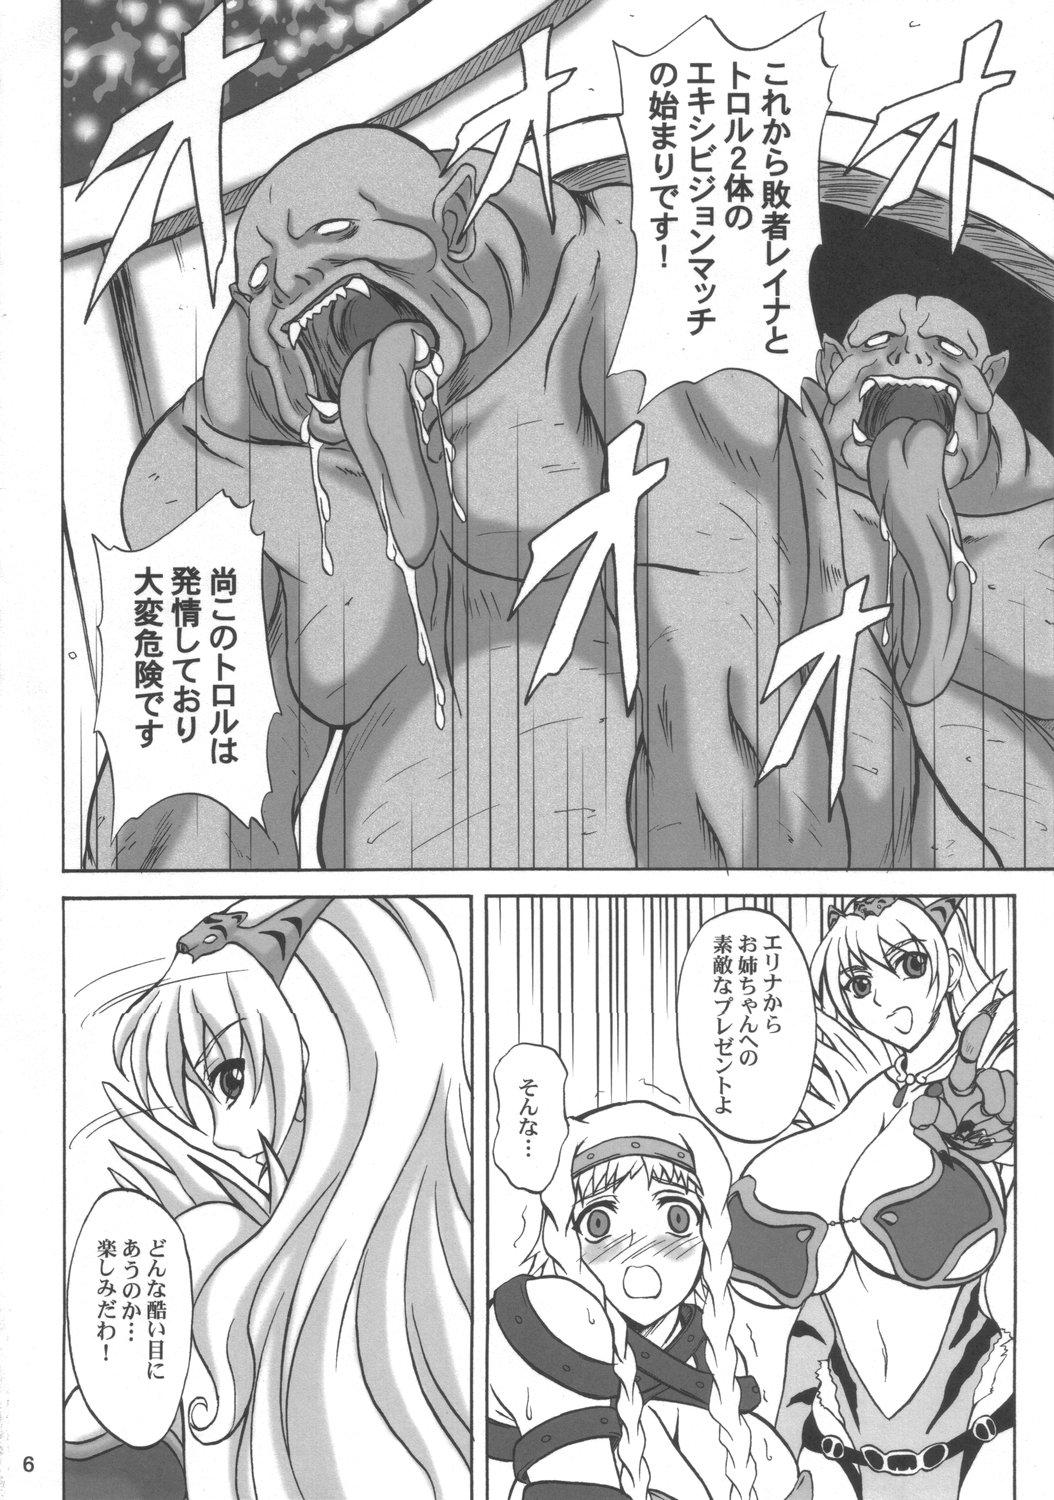 Gape Injoku no Senshi Leina & Elina - Queens blade Nude - Page 5